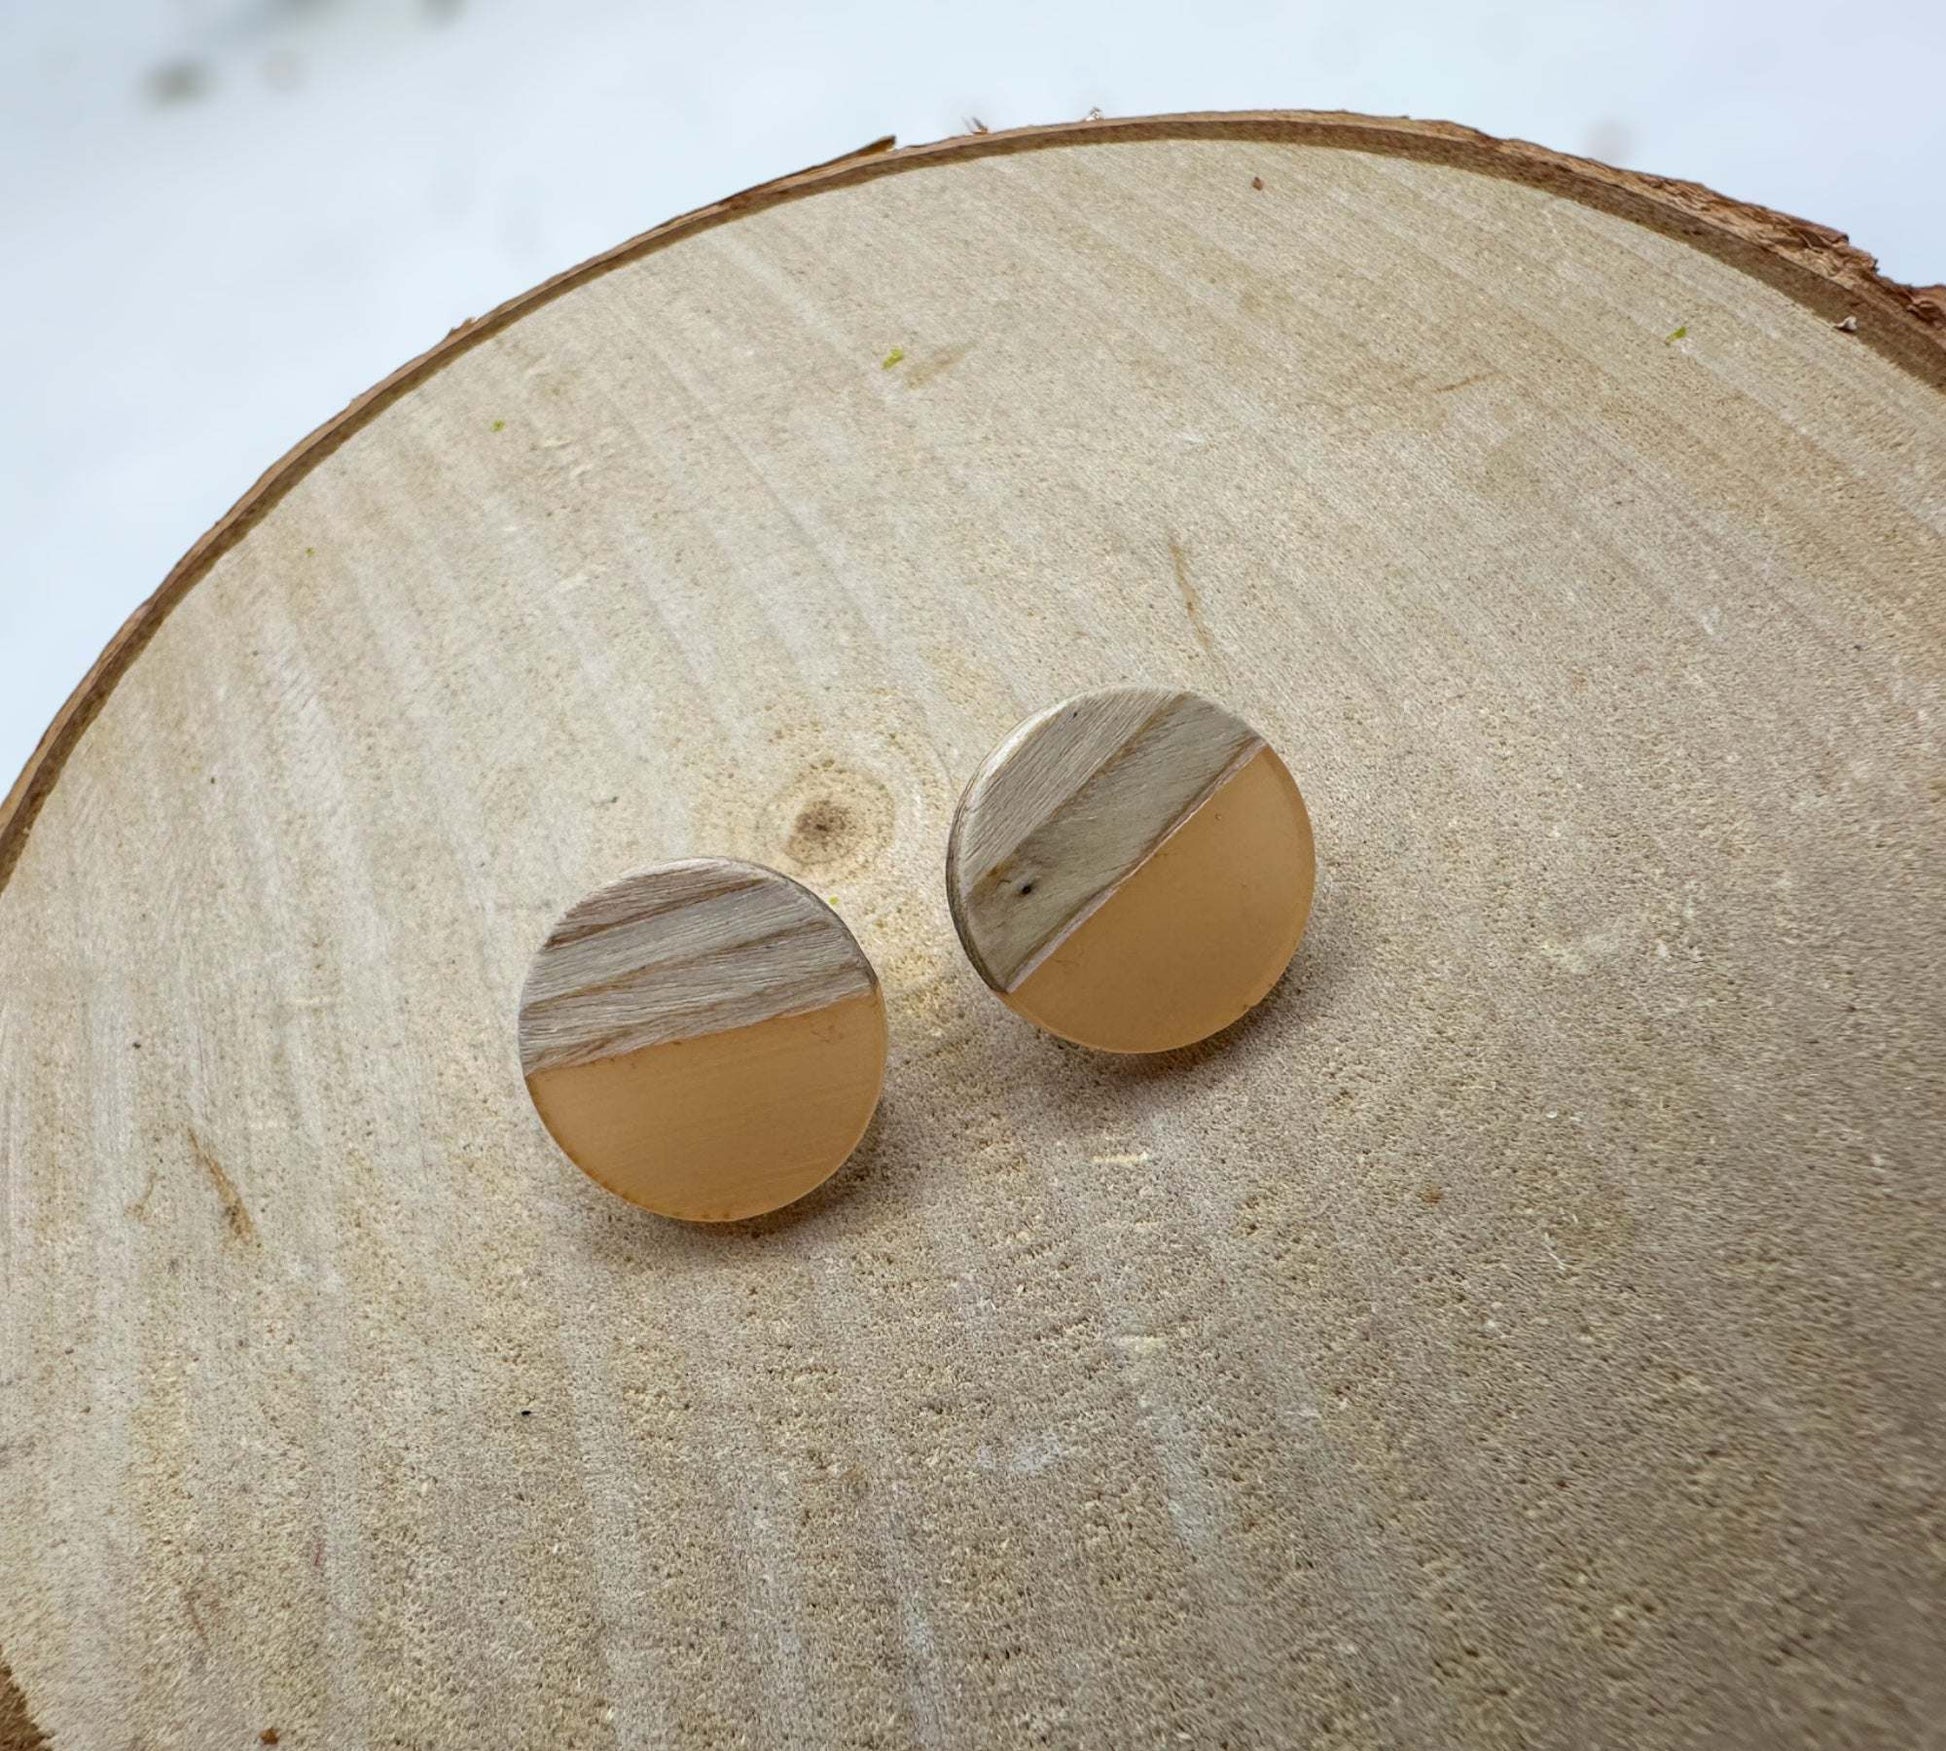 Boho Wood & Resin Stud Earrings - Bohemian Wood and Resin Earrings